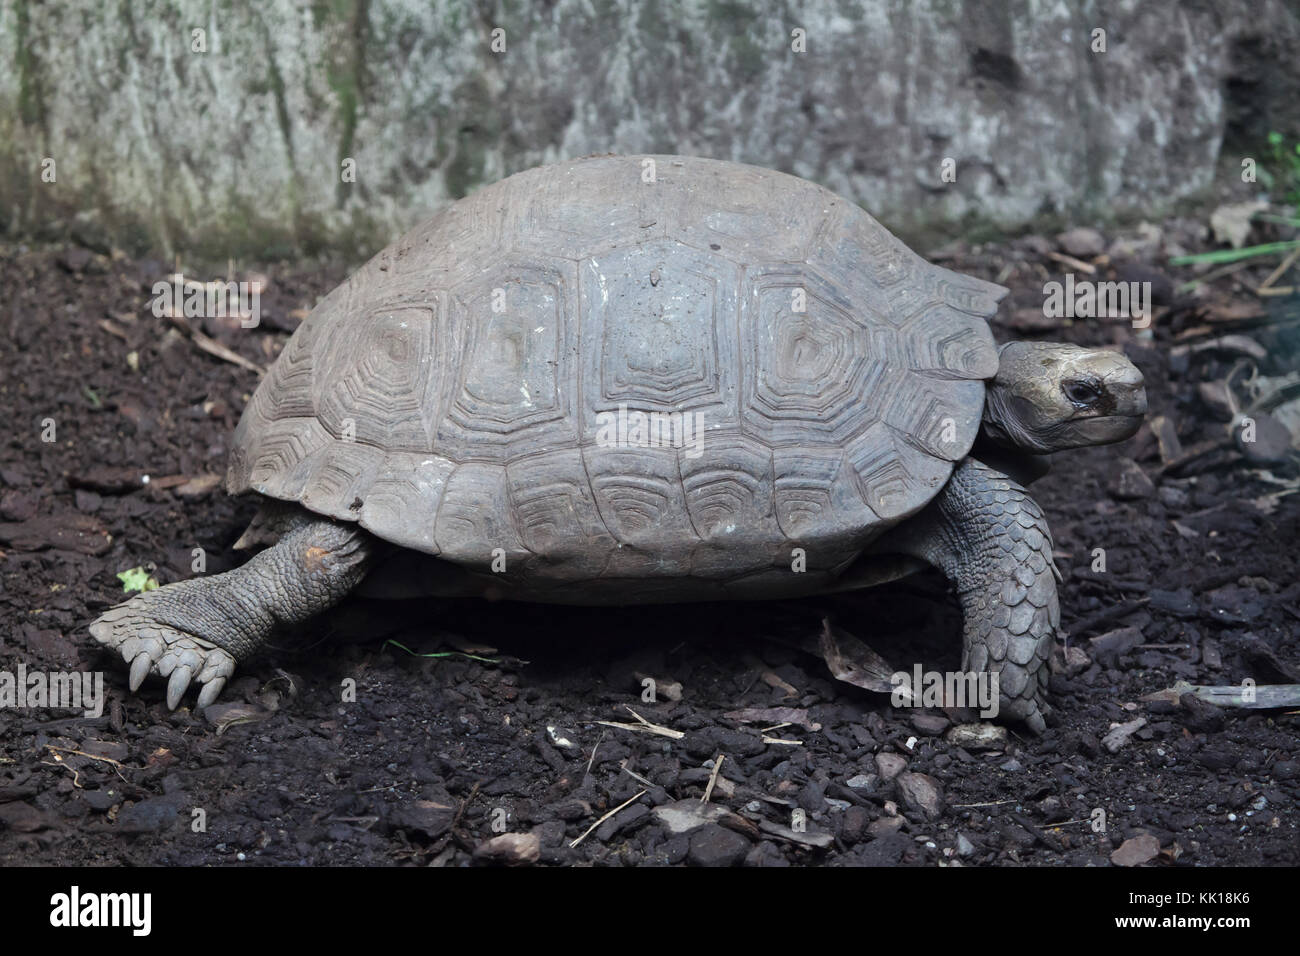 Asian giant tortoise (Manouria emys emys), also known as the Southern brown tortoise. Stock Photo